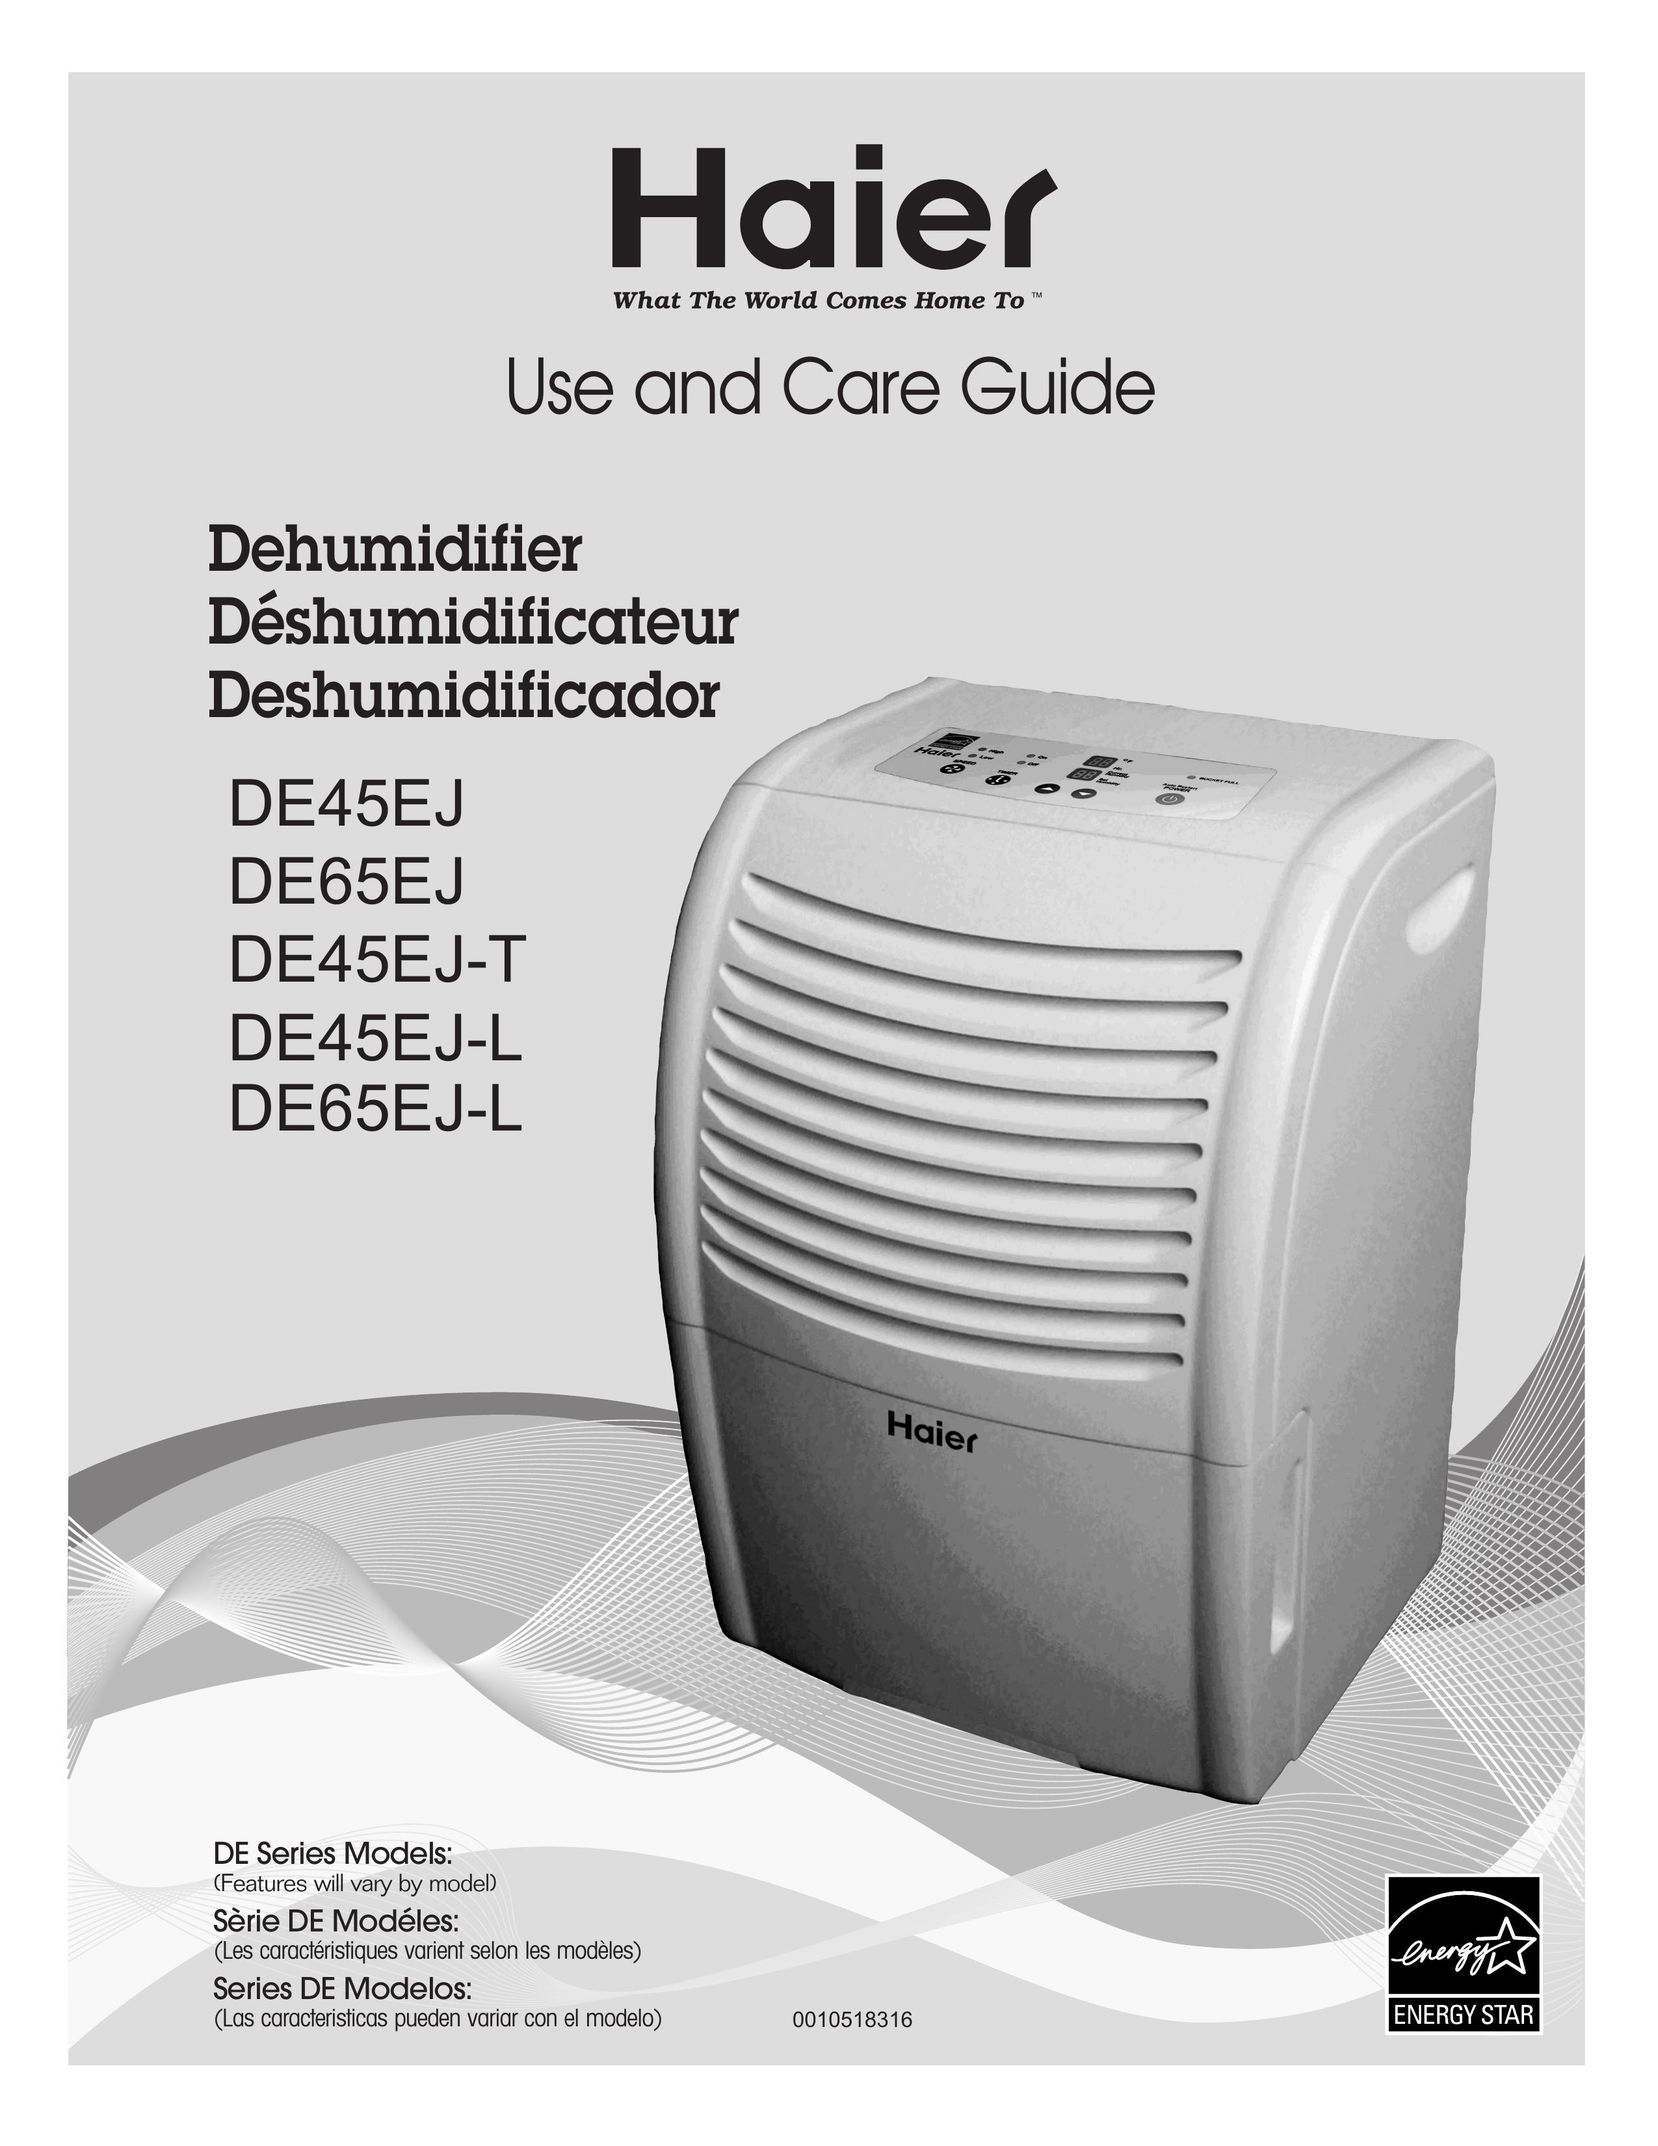 Haier DE65EJ Dehumidifier User Manual